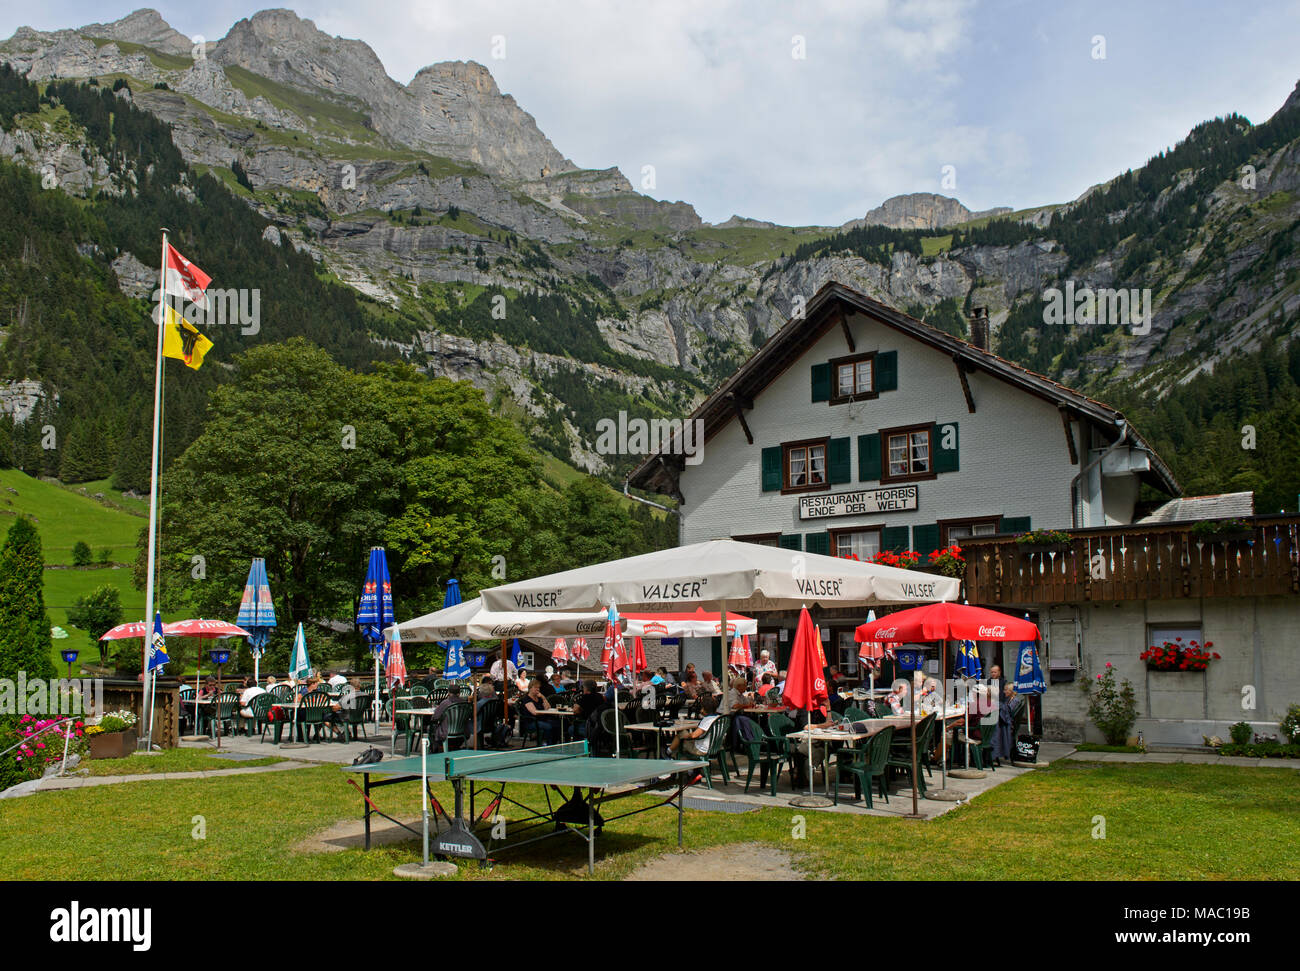 Restaurant Ende der Welt", Ende der Welt, Horbis, Engelberg, Kanton Obwalden, Schweiz Stockfoto